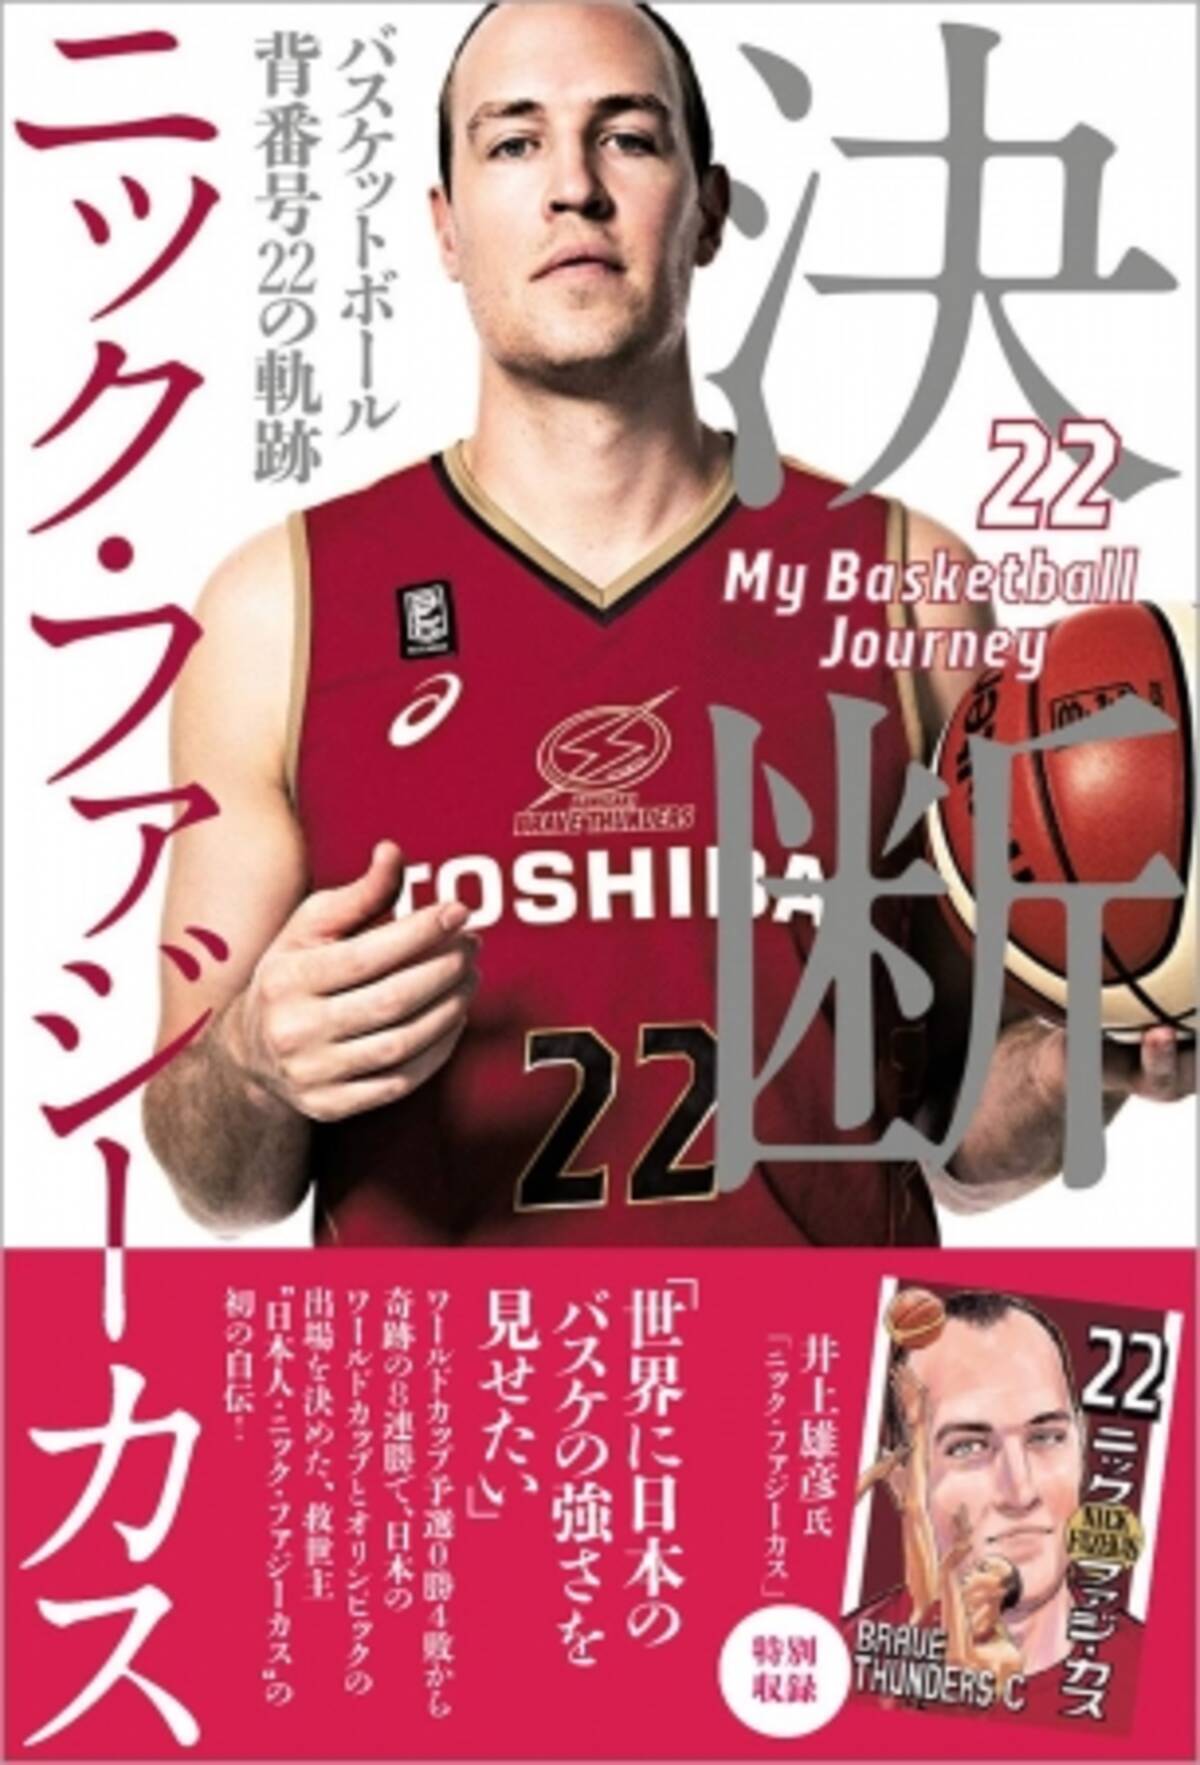 日本に帰化したバスケットボール界の 救世主 ニック ファジーカス選手の半生を綴った1冊 決断 バスケットボール 背番号22の軌跡 が発売 19年8月10日 エキサイトニュース